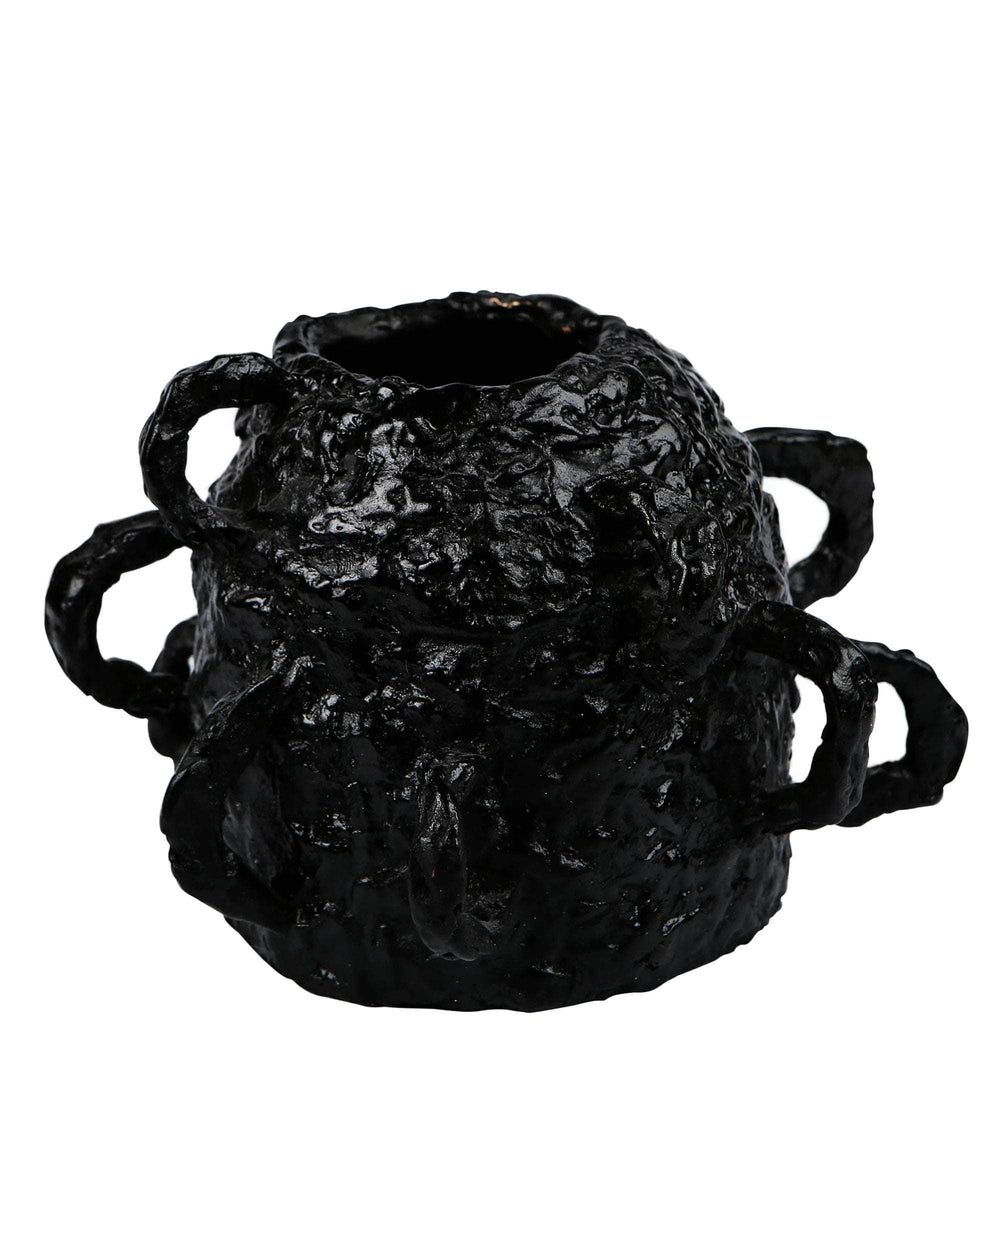 Jagged Orbit Bronze Vase